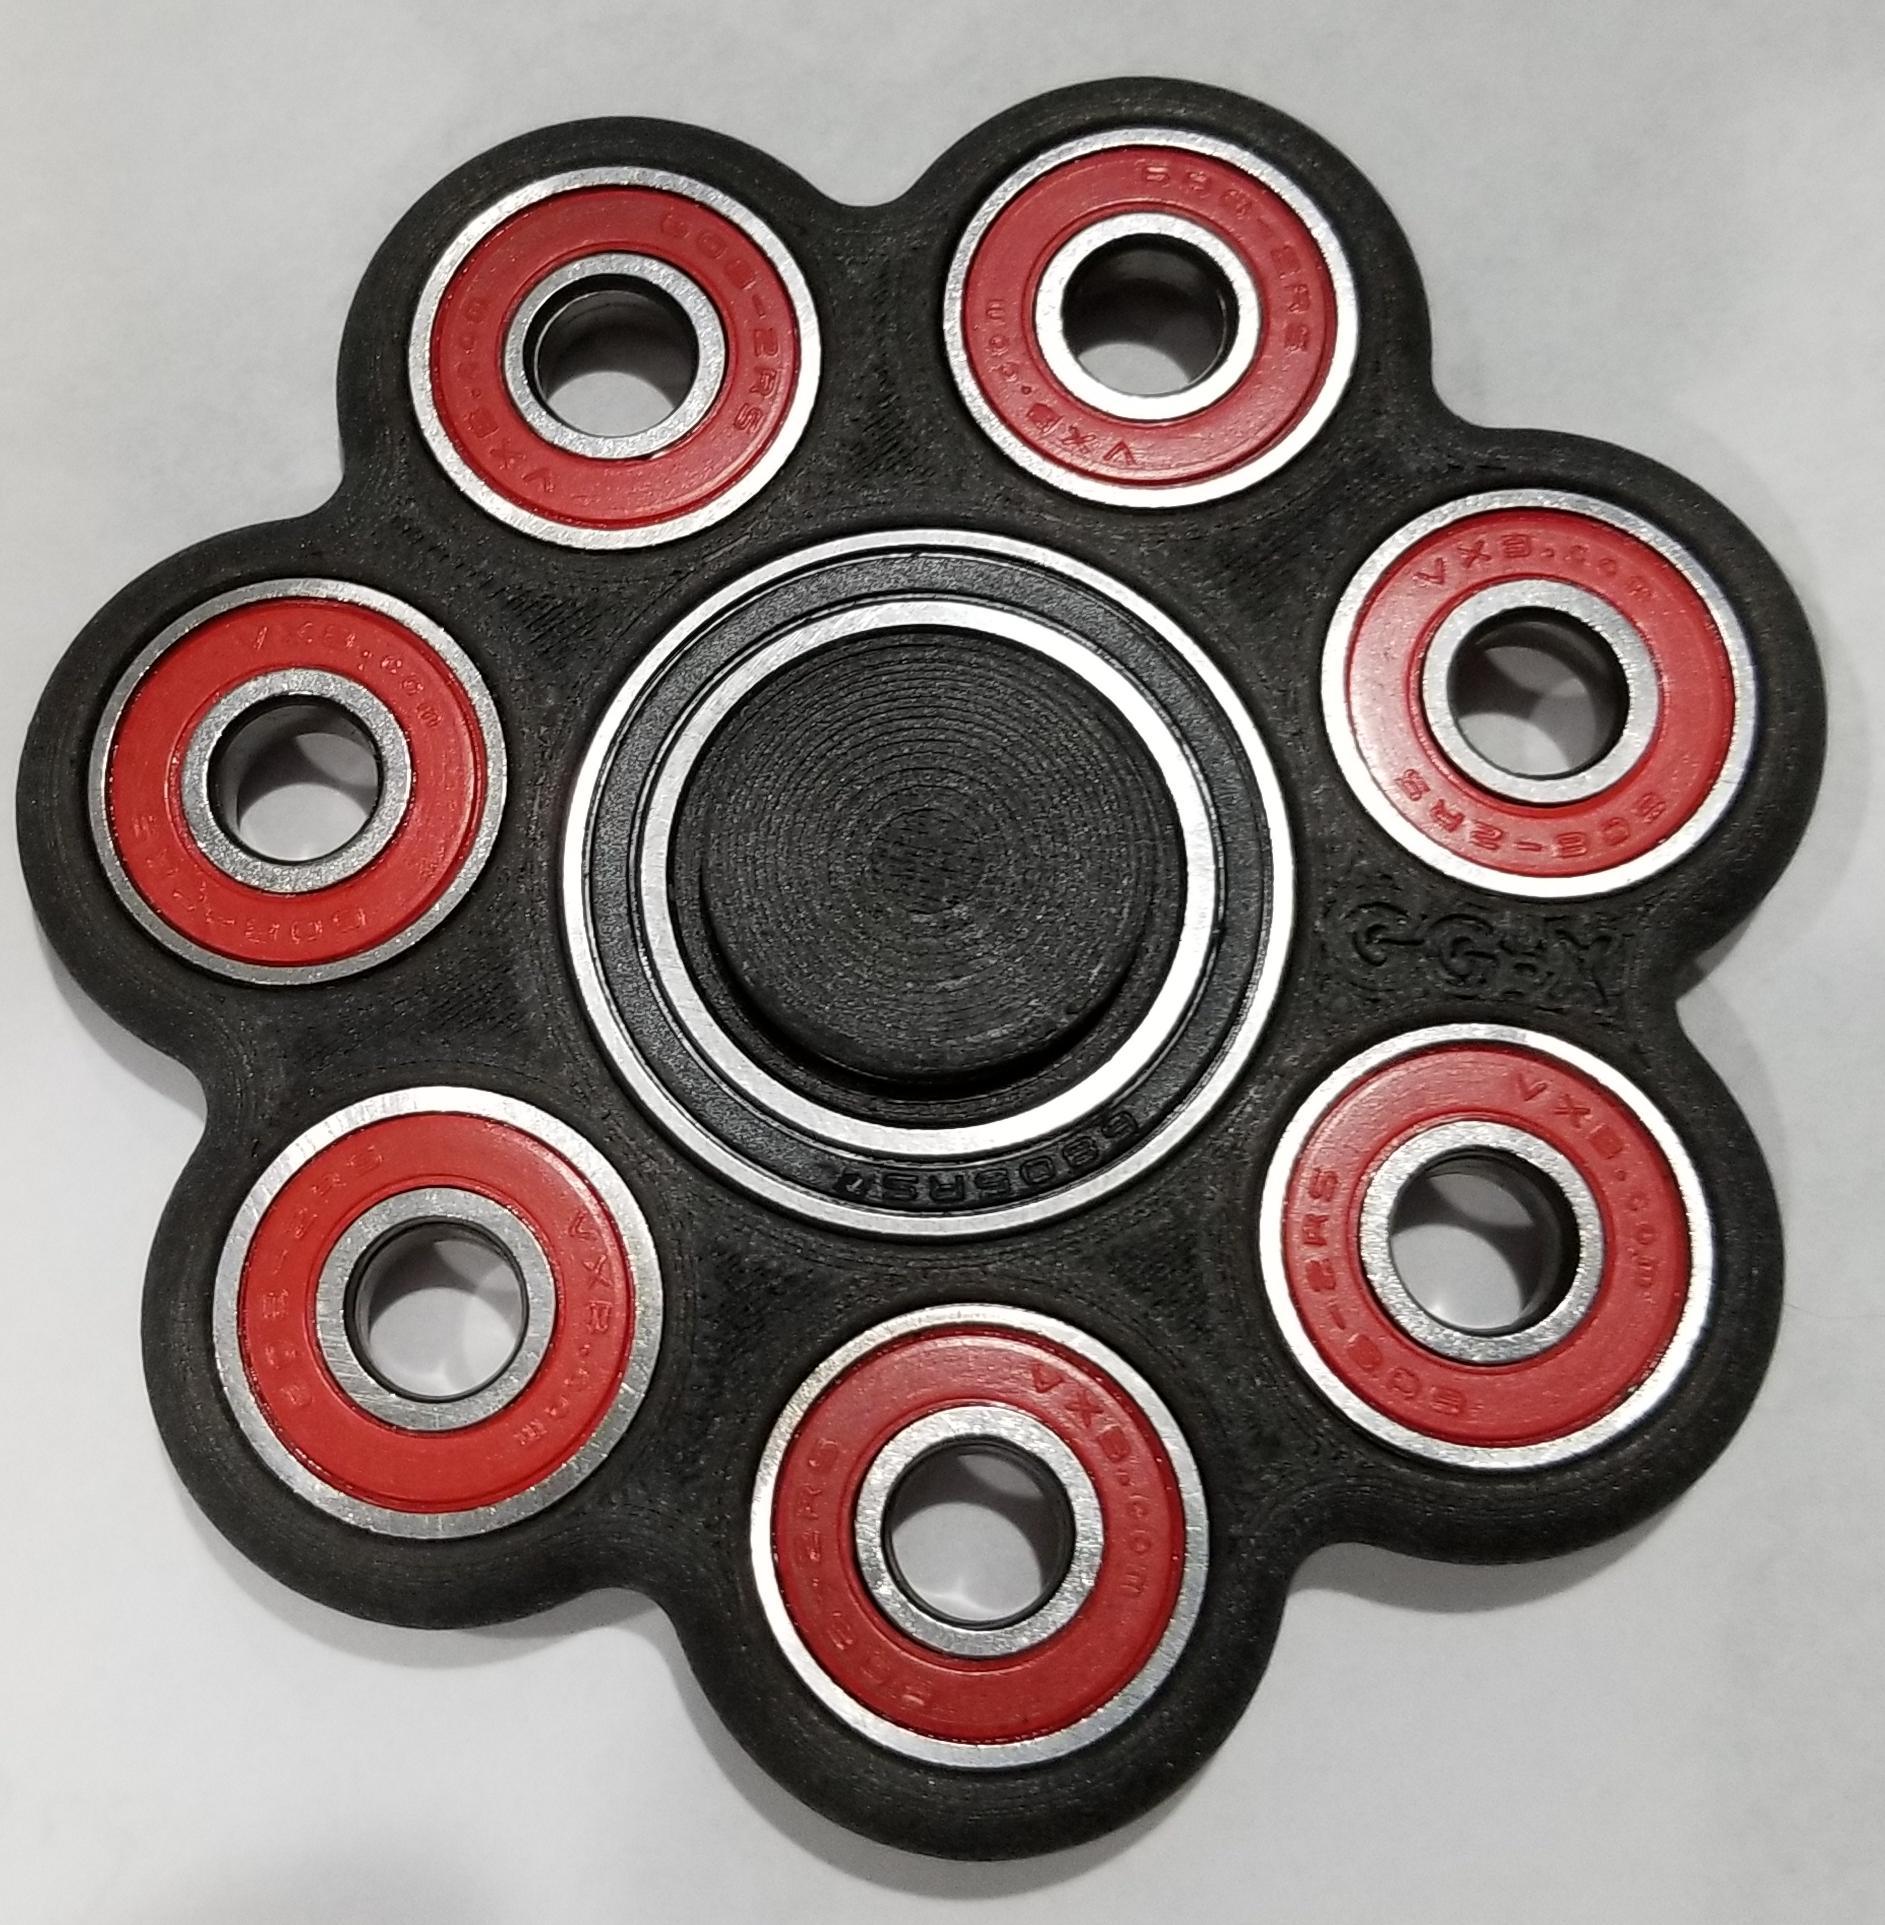 GG-X Black Carbon Nine Bearing Fidget Spinner